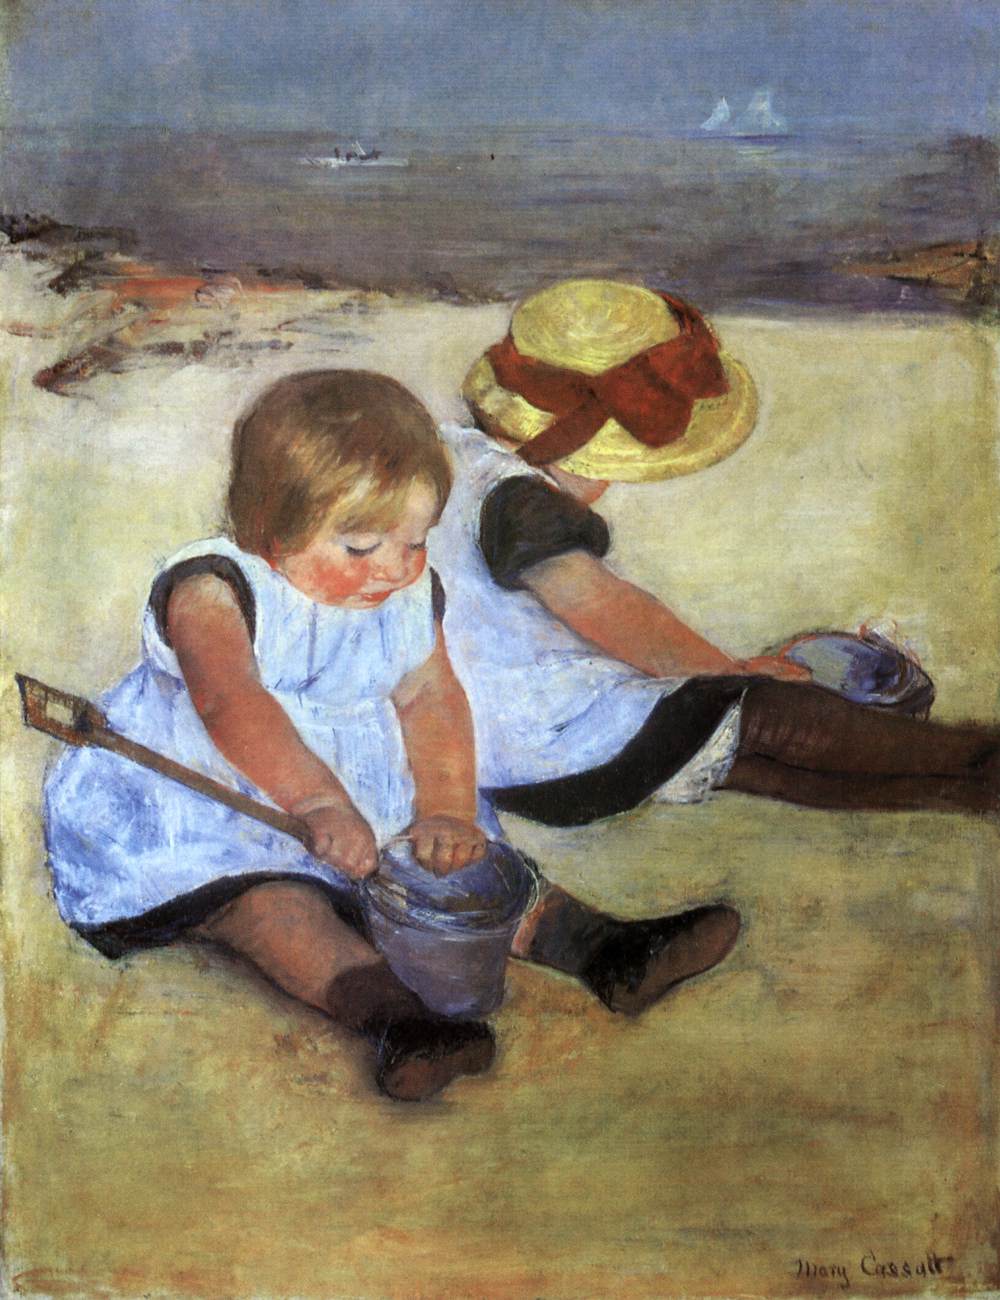 Barn på stranden